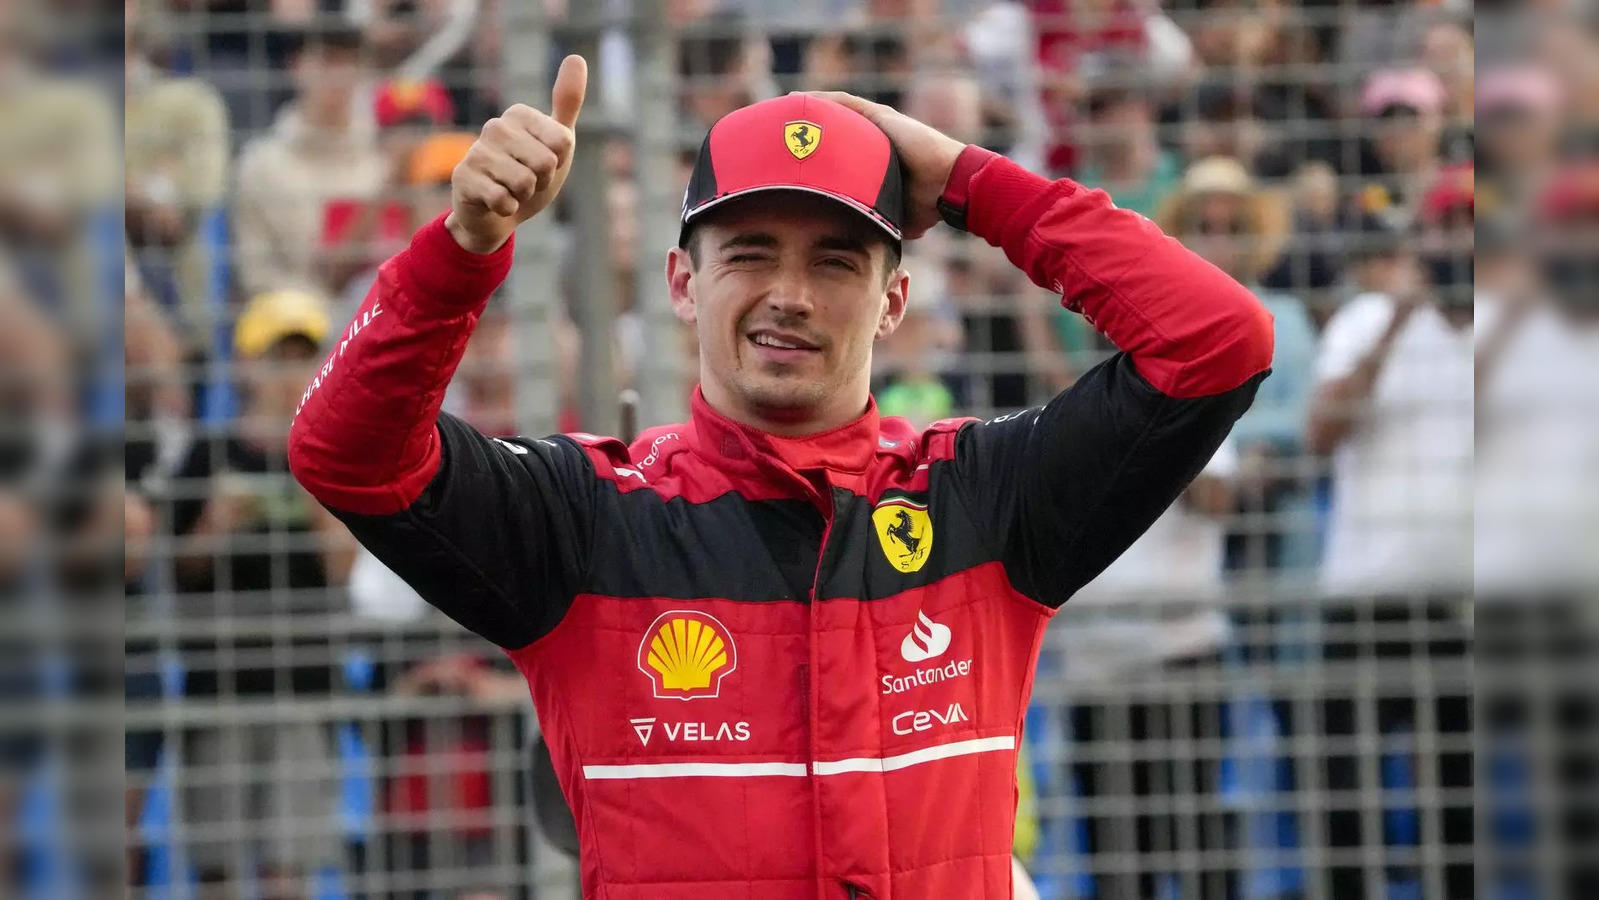 F1 Grand Prix: Charles Leclerc Wins Formula 1 Australian Race